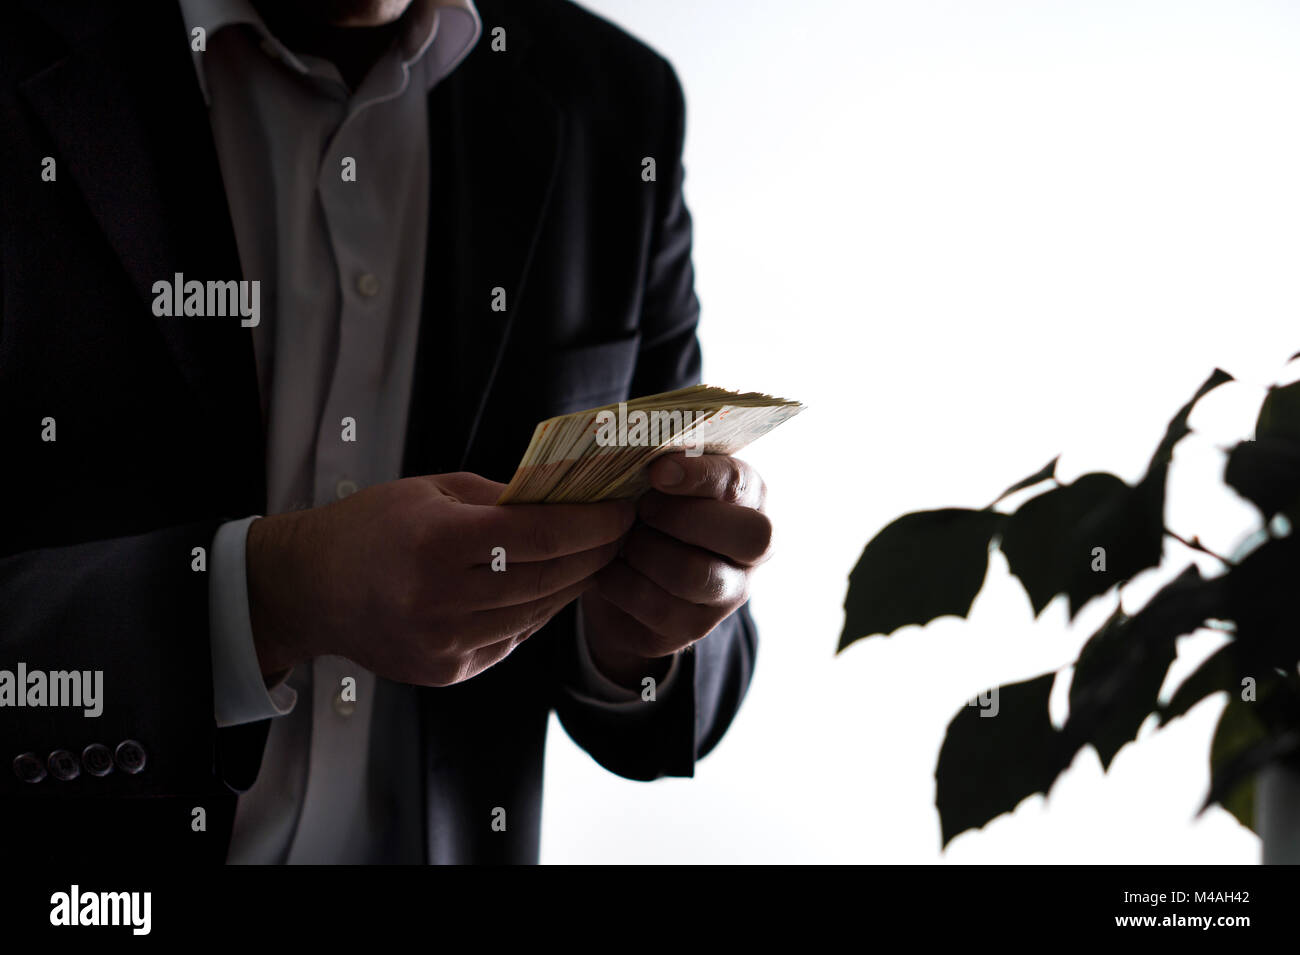 Blanchisserie de l'argent, la corruption et la cupidité concept. Homme d'homme en costume tenant une pile d'argent dans la main. Banque D'Images